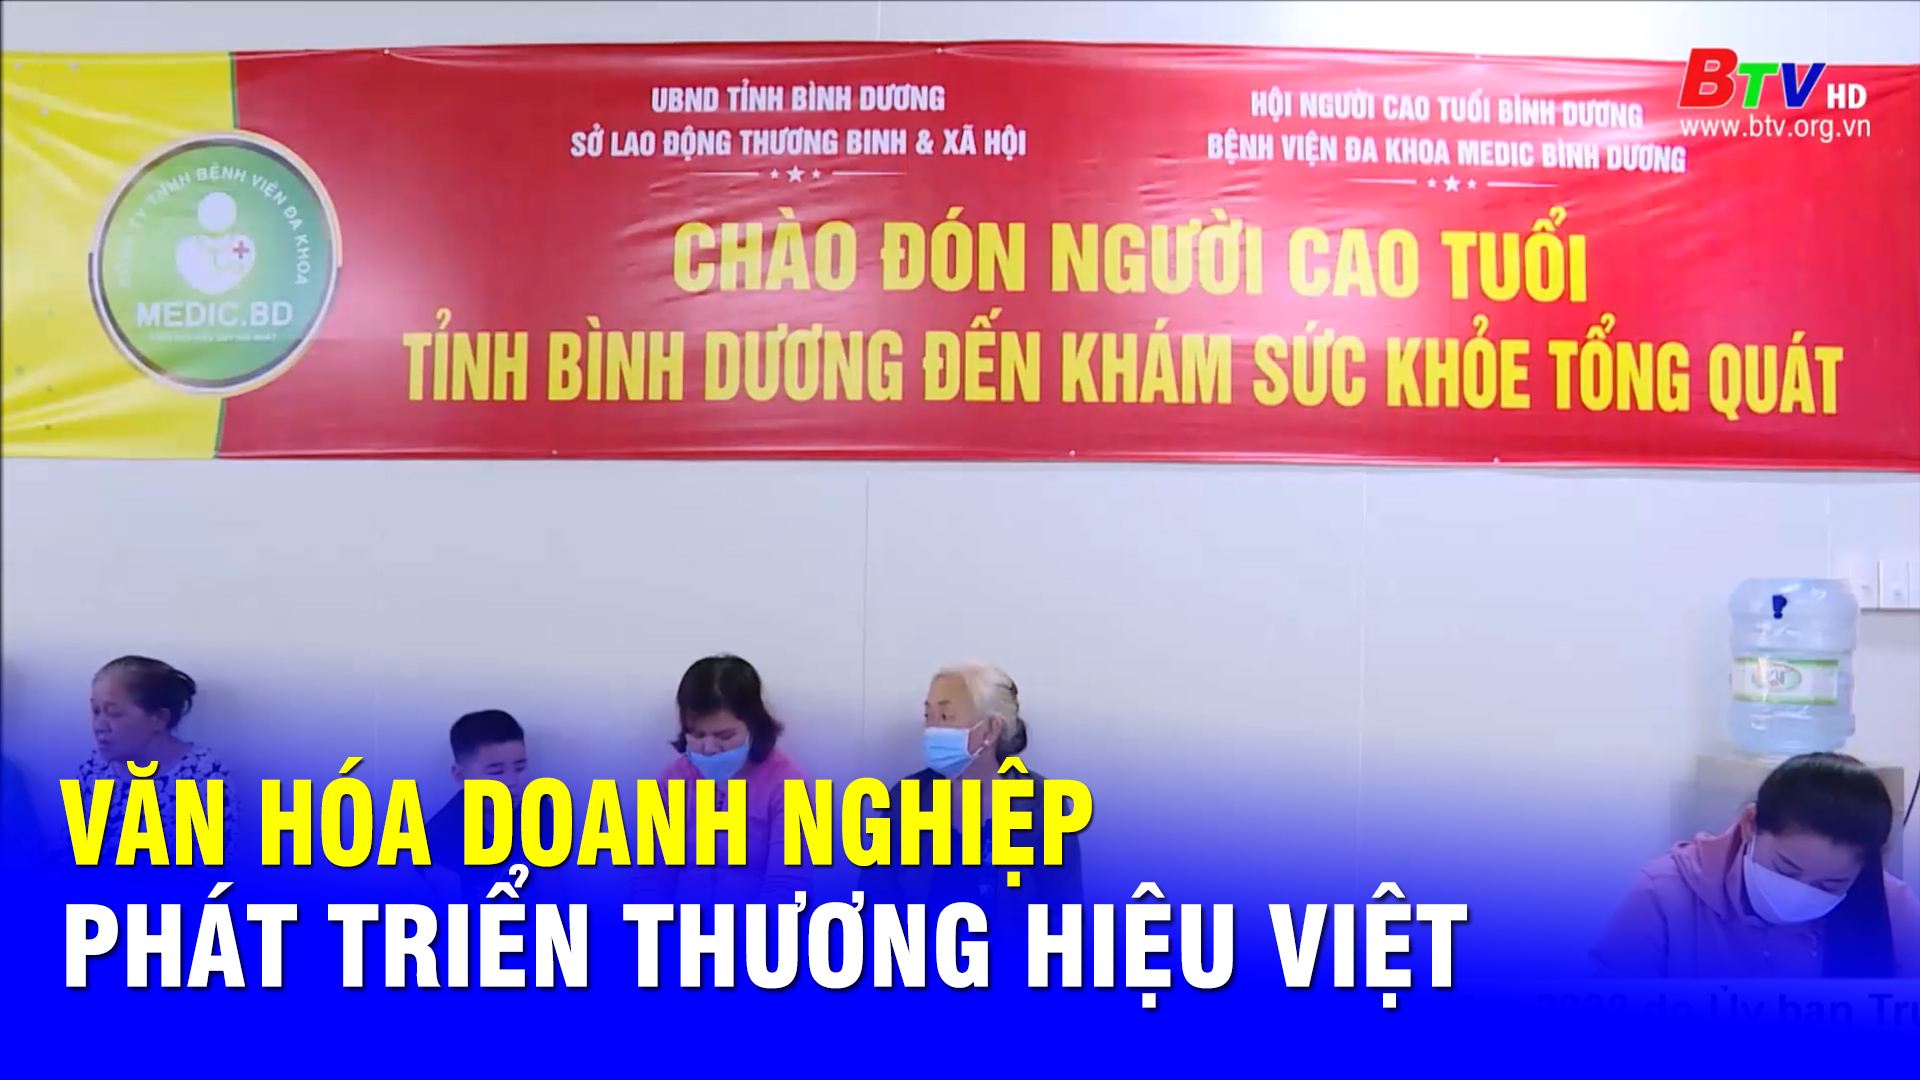 Văn hóa doanh nghiệp - Phát triển thương hiệu Việt